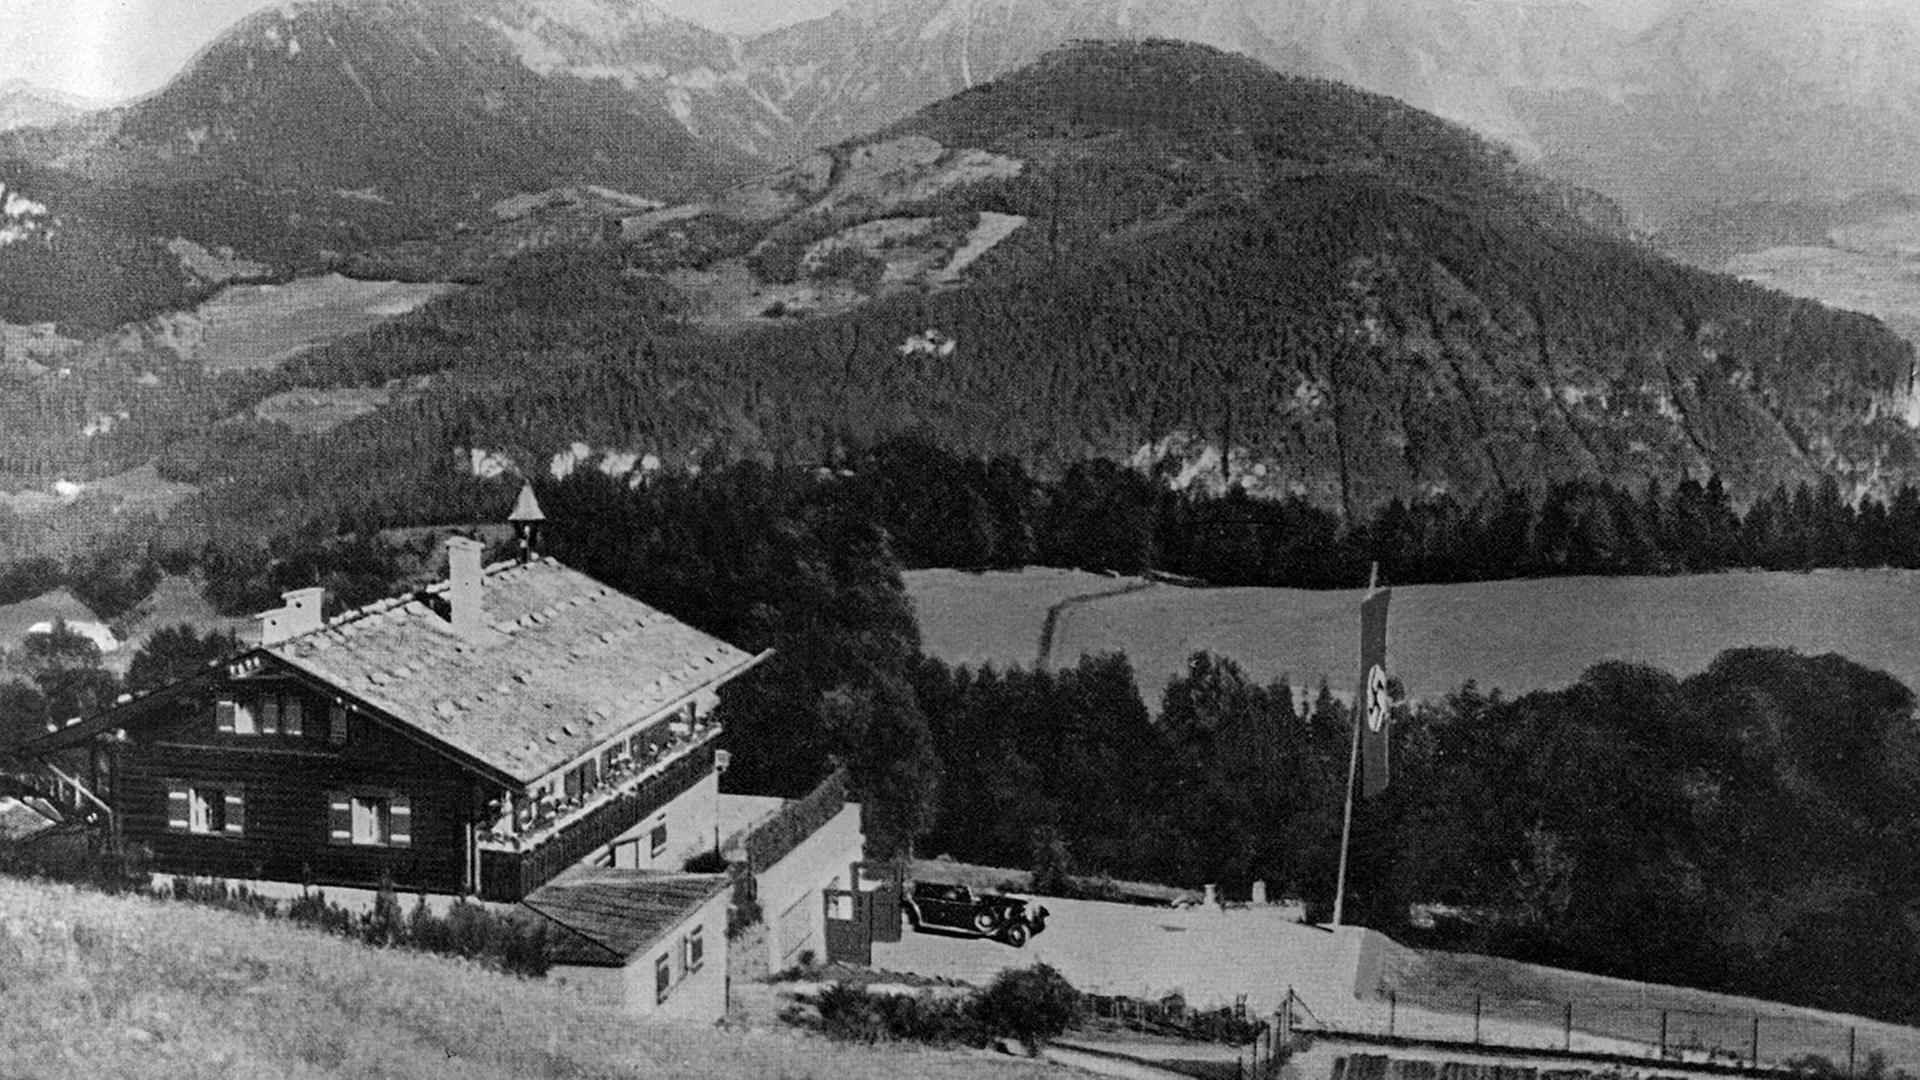 Blick auf das Haus des nationalsozialistischen Führers Adolf Hitler auf dem Obersalzberg (Berchtesgaden). Undatierte Aufnahme.